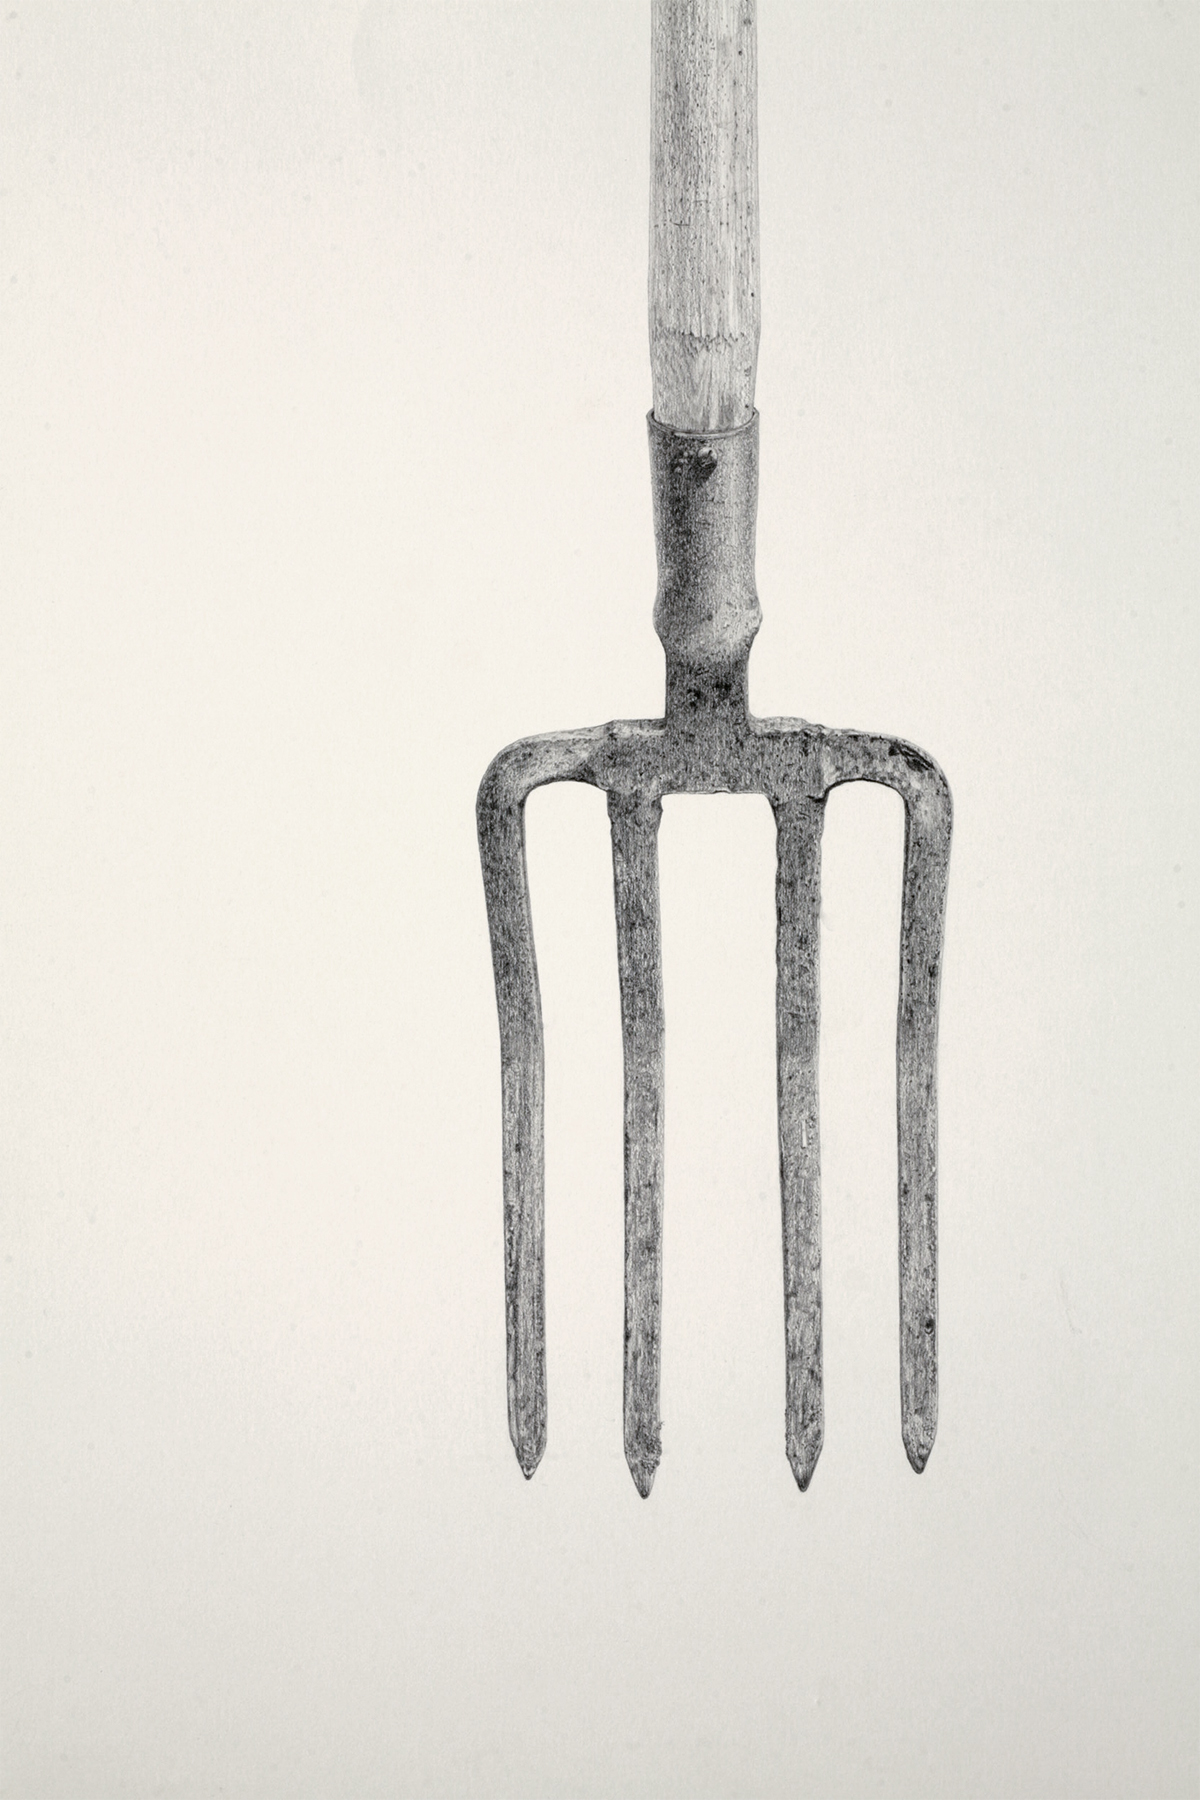 o.T. (Detail) / Bleistift auf Papier (pencil on paper) / 80 x 140 cm / 2011